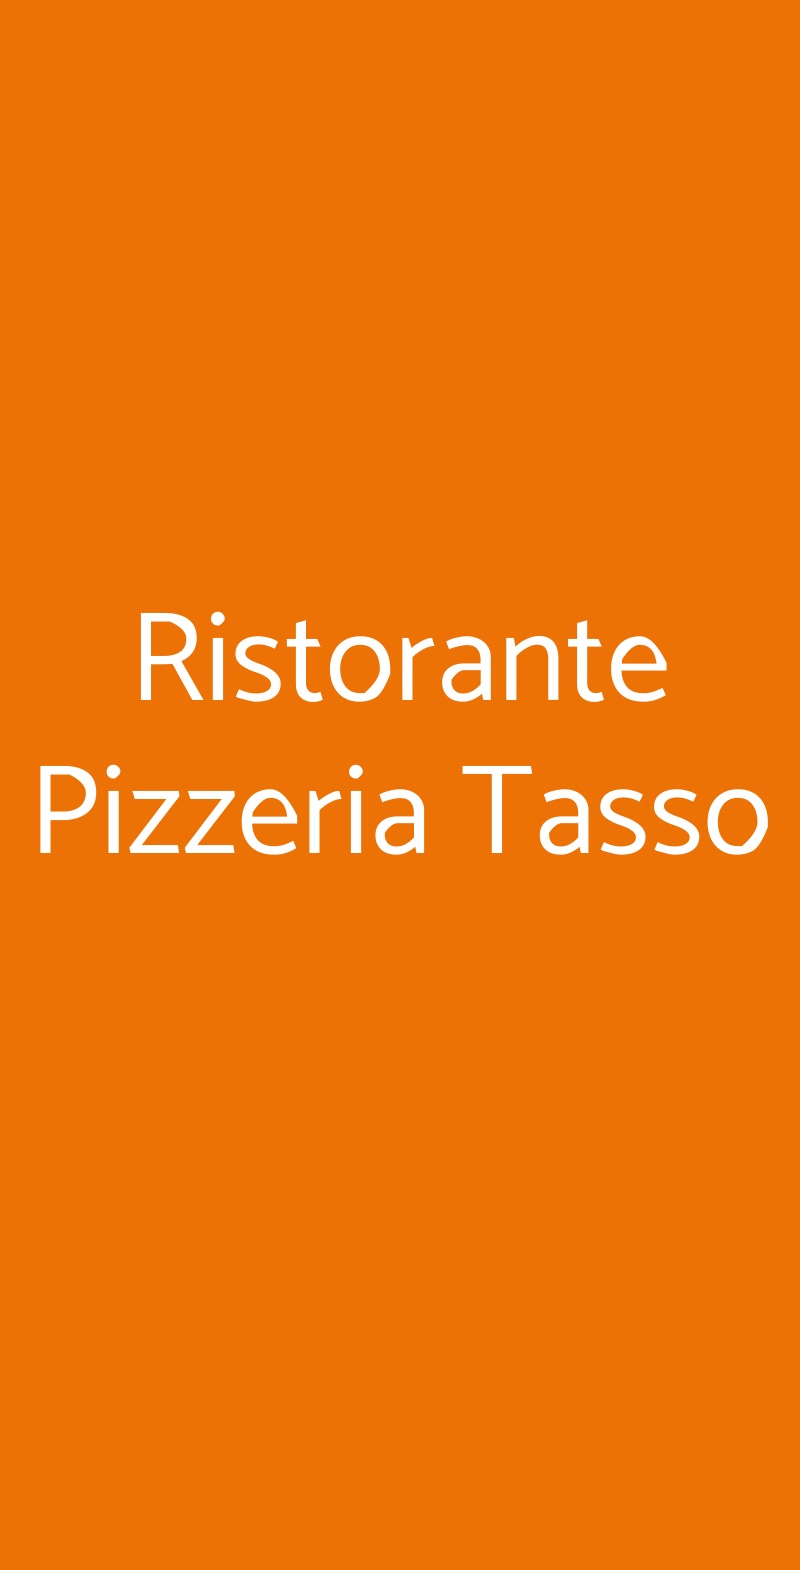 Ristorante Pizzeria Tasso Sorrento menù 1 pagina